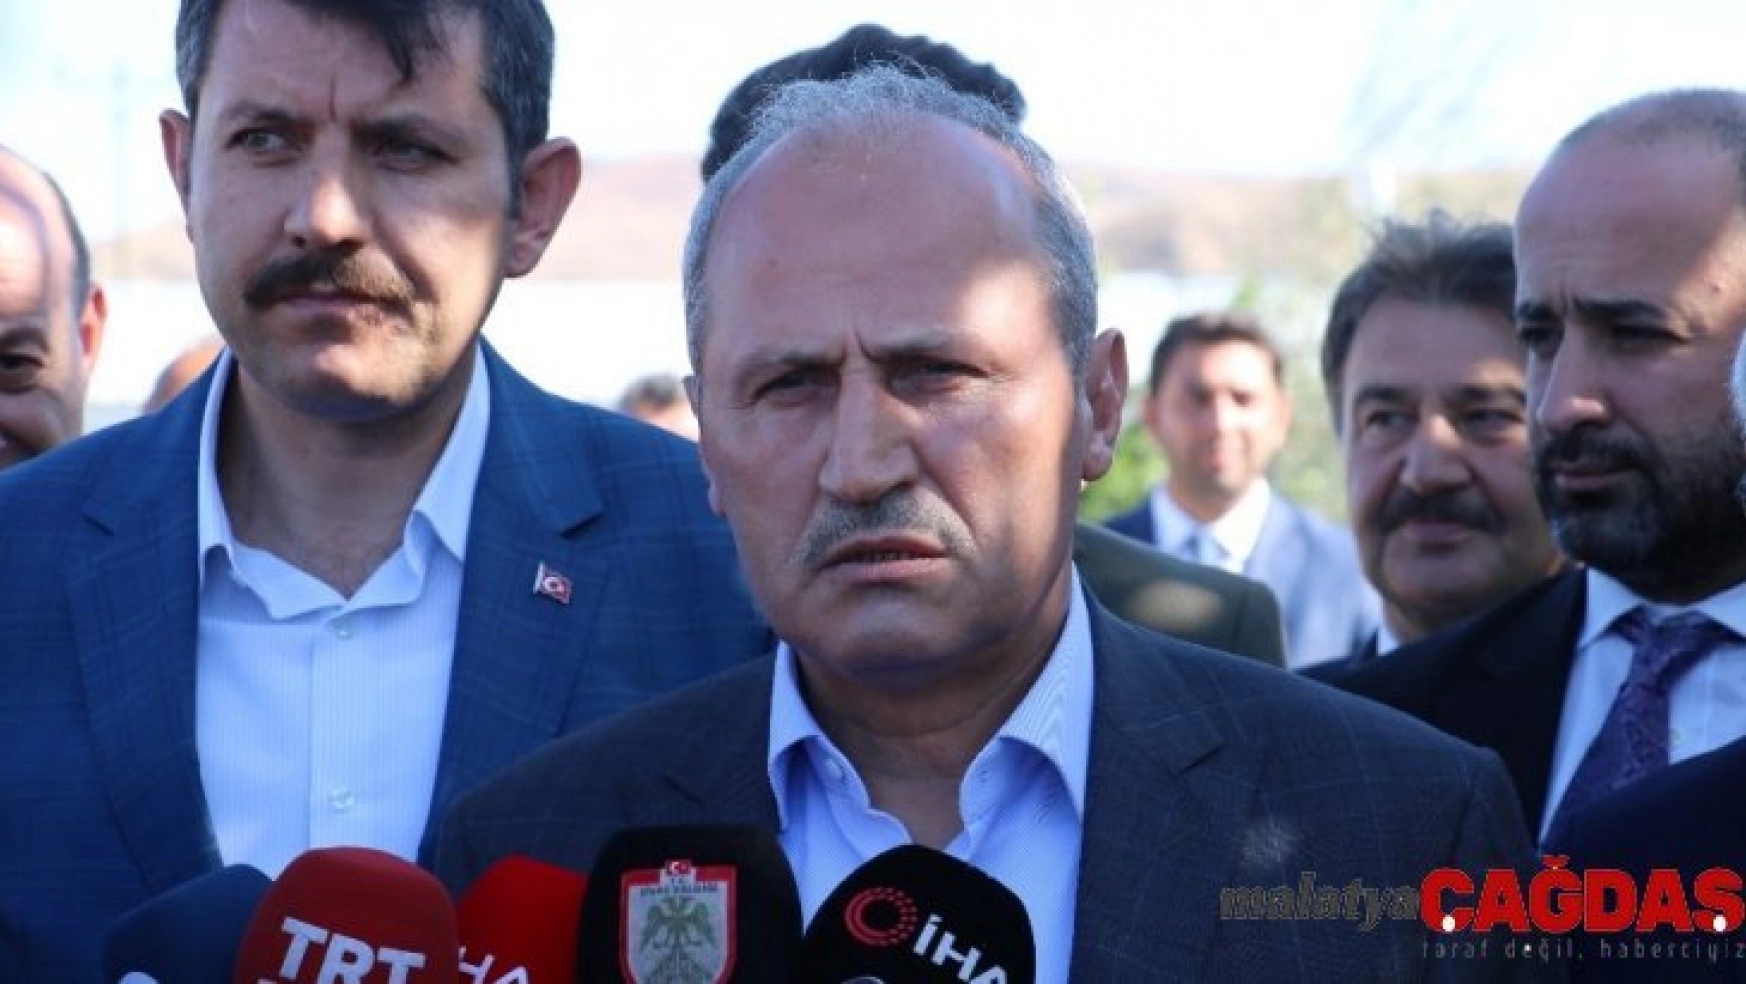 Ulaştırma ve Altyapı Bakanı Mehmet Cahit Turhan: